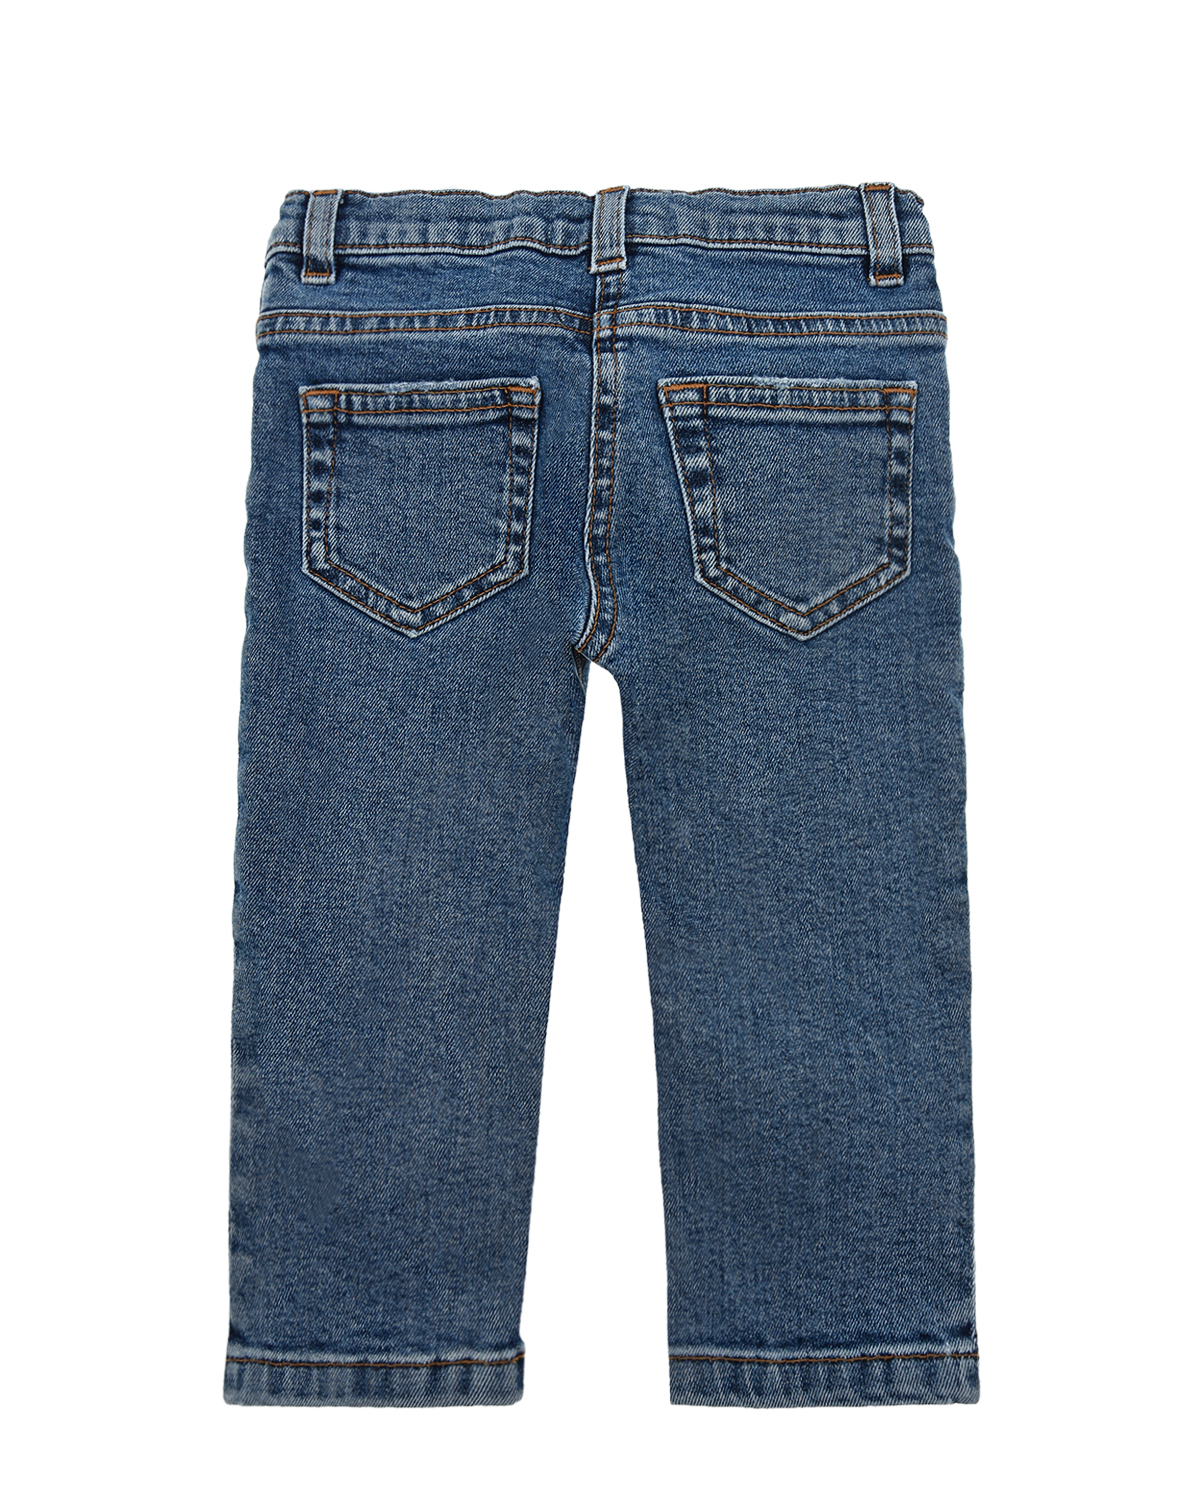 Базовые джинсы для девочек Dolce&Gabbana детские, размер 68, цвет голубой - фото 3